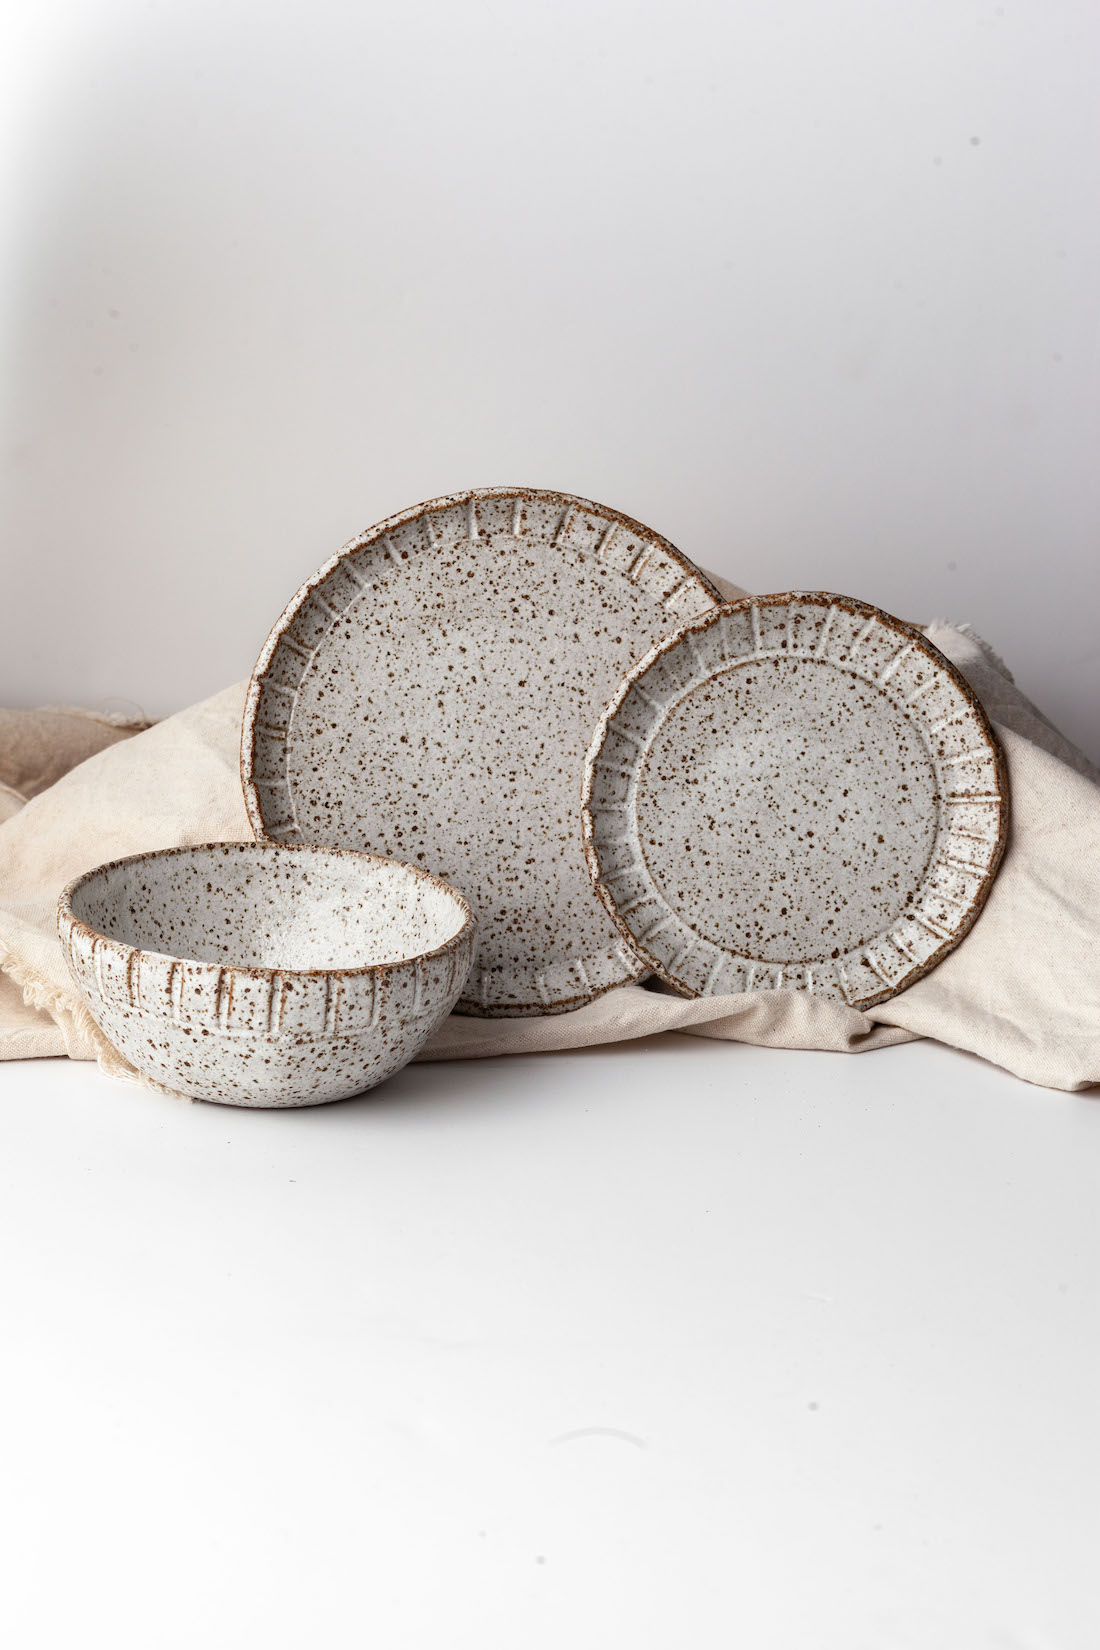 Airr Made Ceramics white glazes bowl and plates